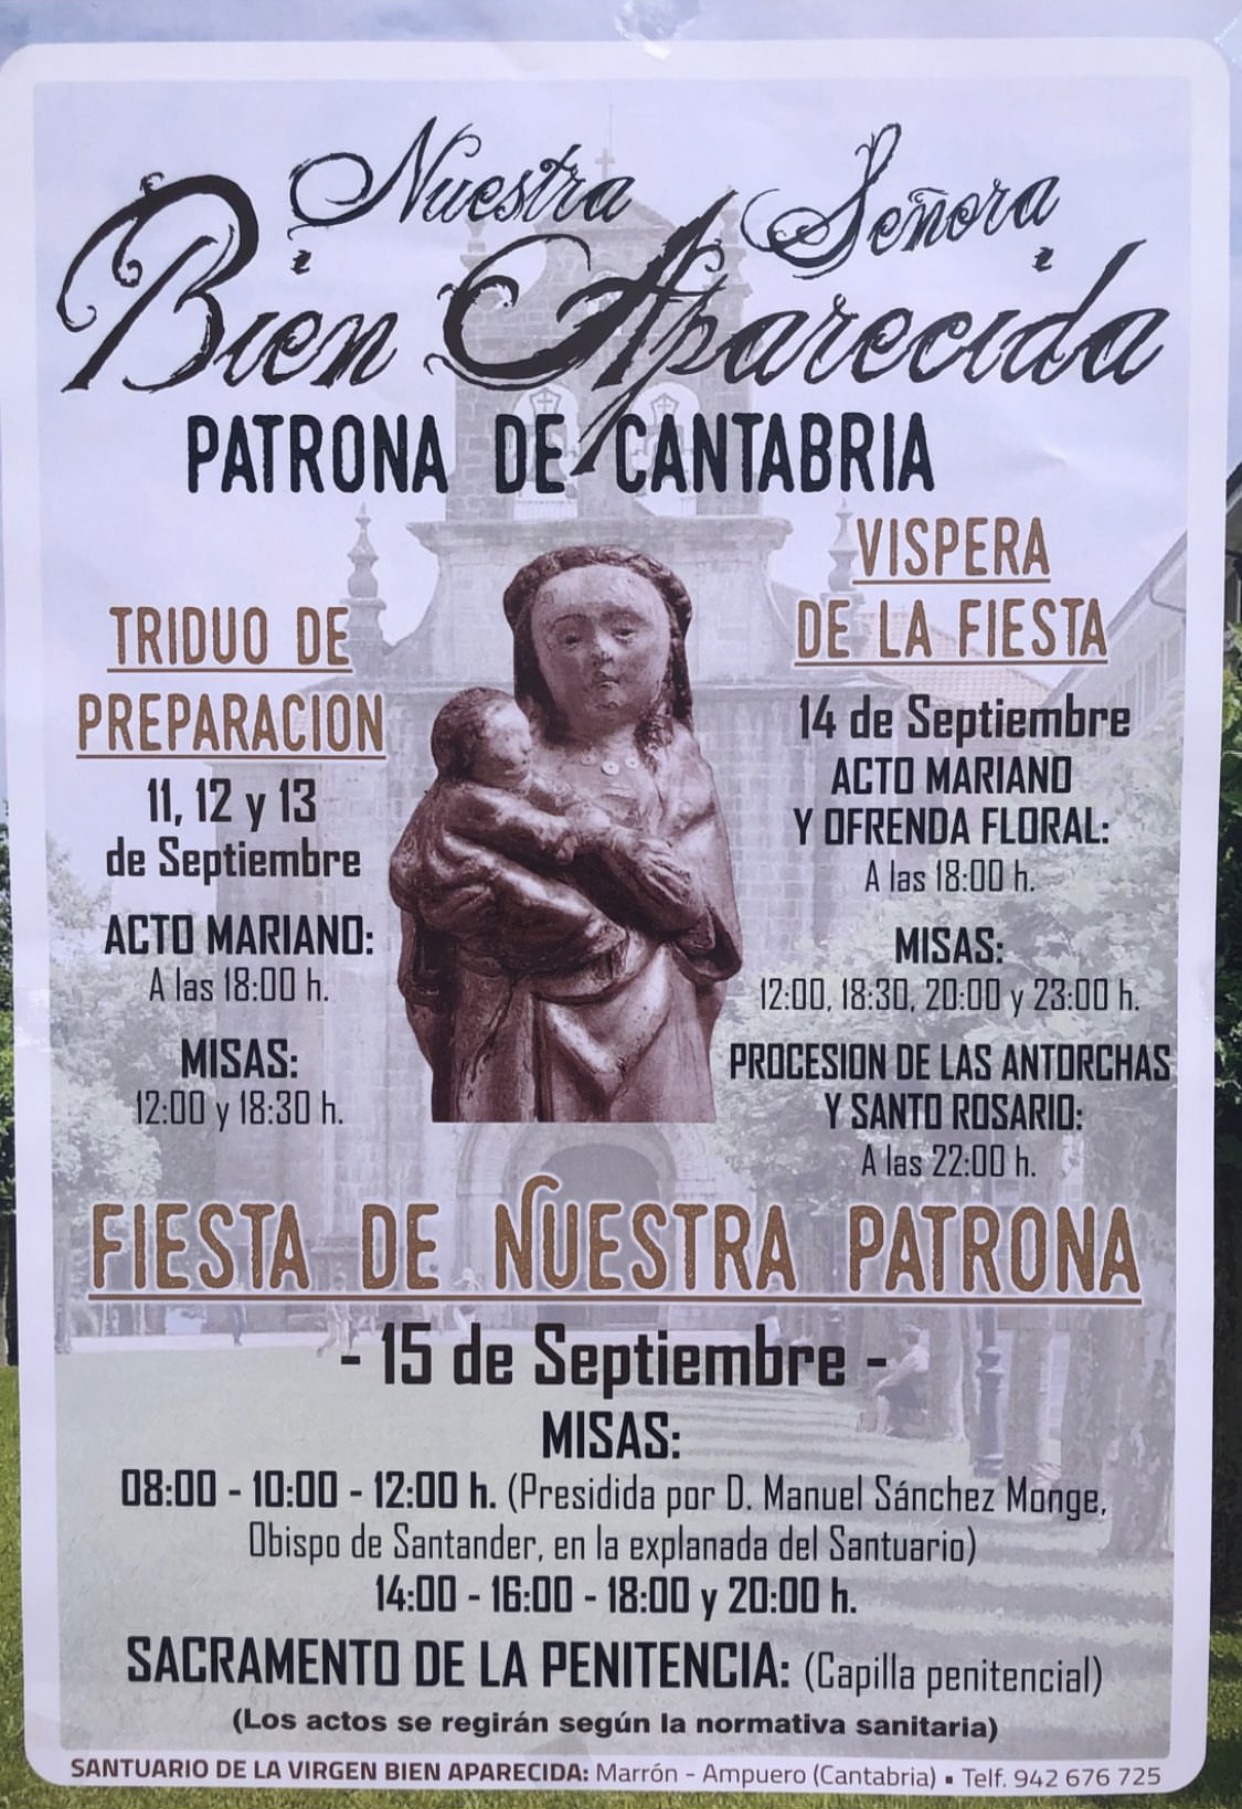 Nuestra Señora de la Bien Aparecida 2022 – Patrona de Cantabria